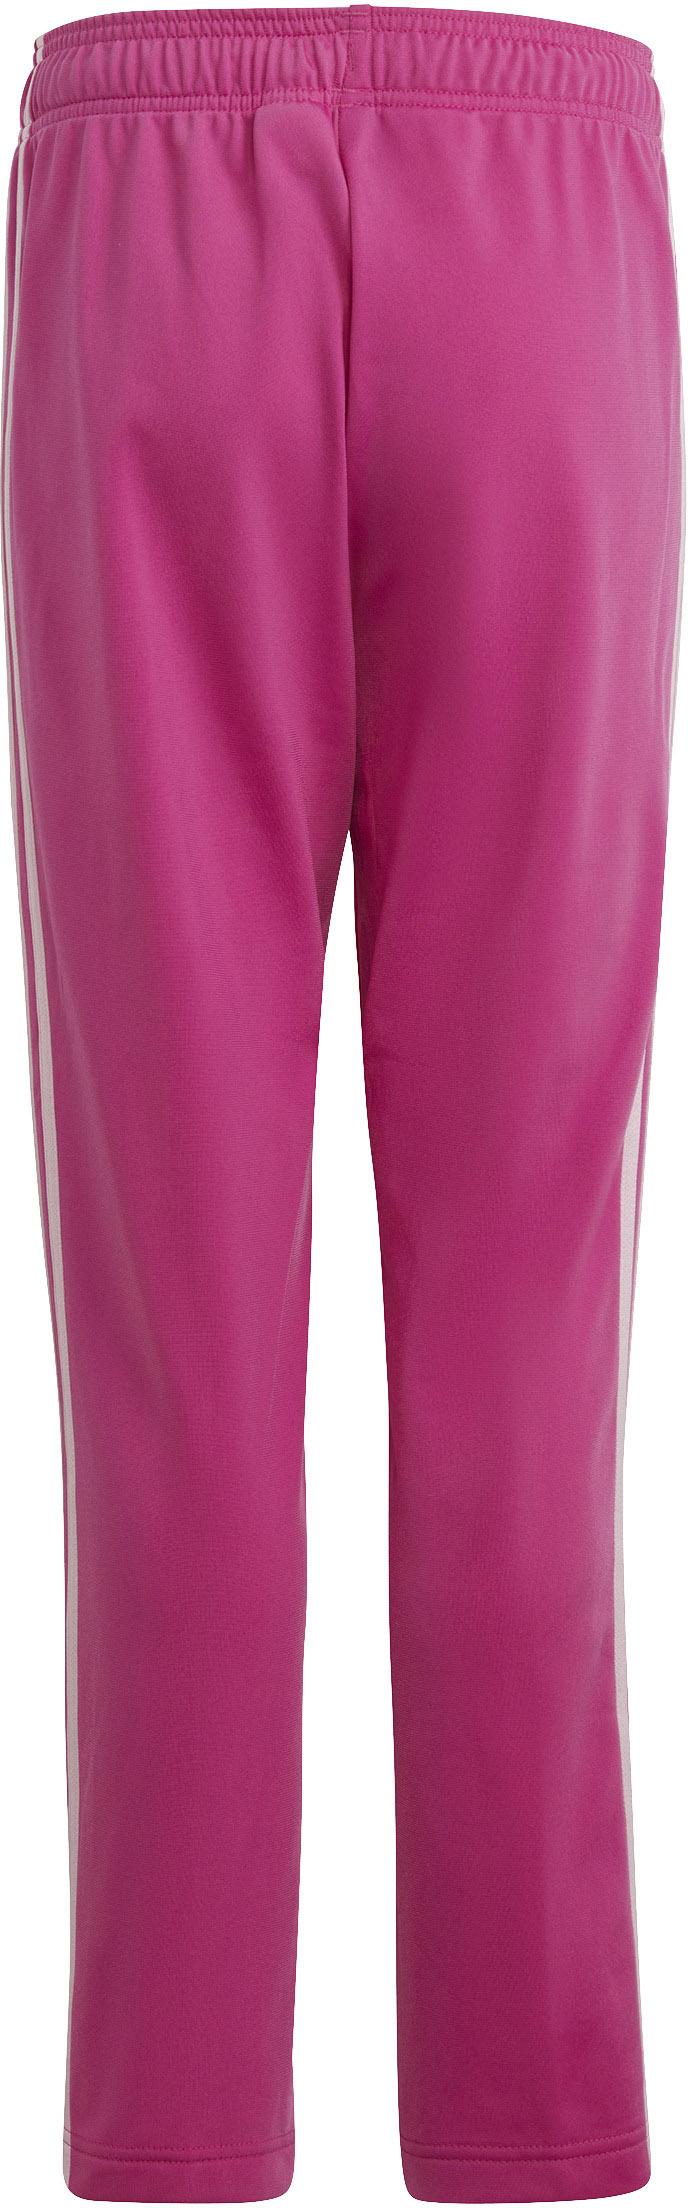 Adidas Trainingsanzug Online fuchsia-white kaufen pink-semi Shop im clear SportScheck lucid Mädchen von